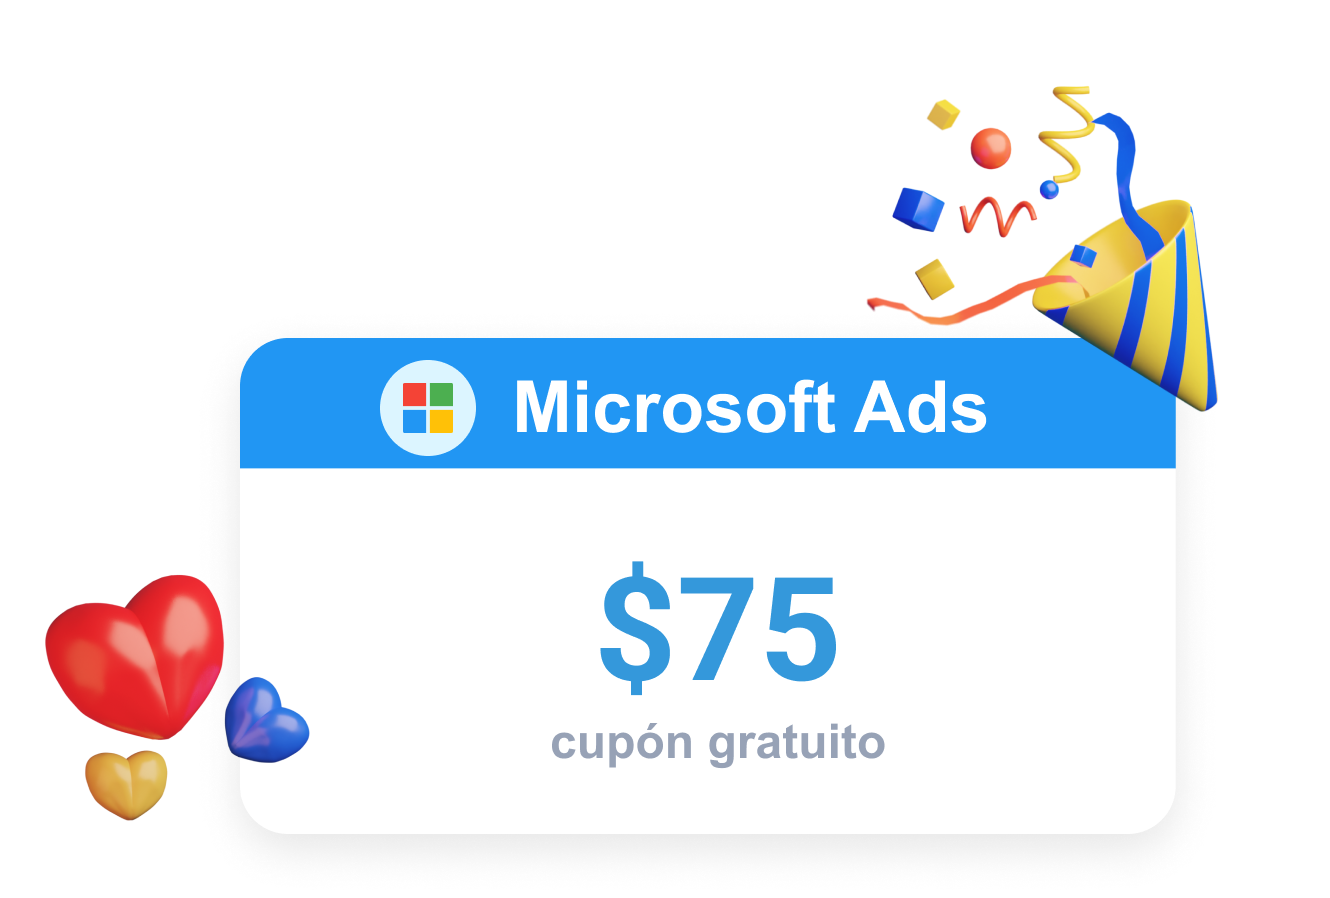 Clever Ads ofrece una promoción para Microsoft Ads en forma de cupón gratuito.